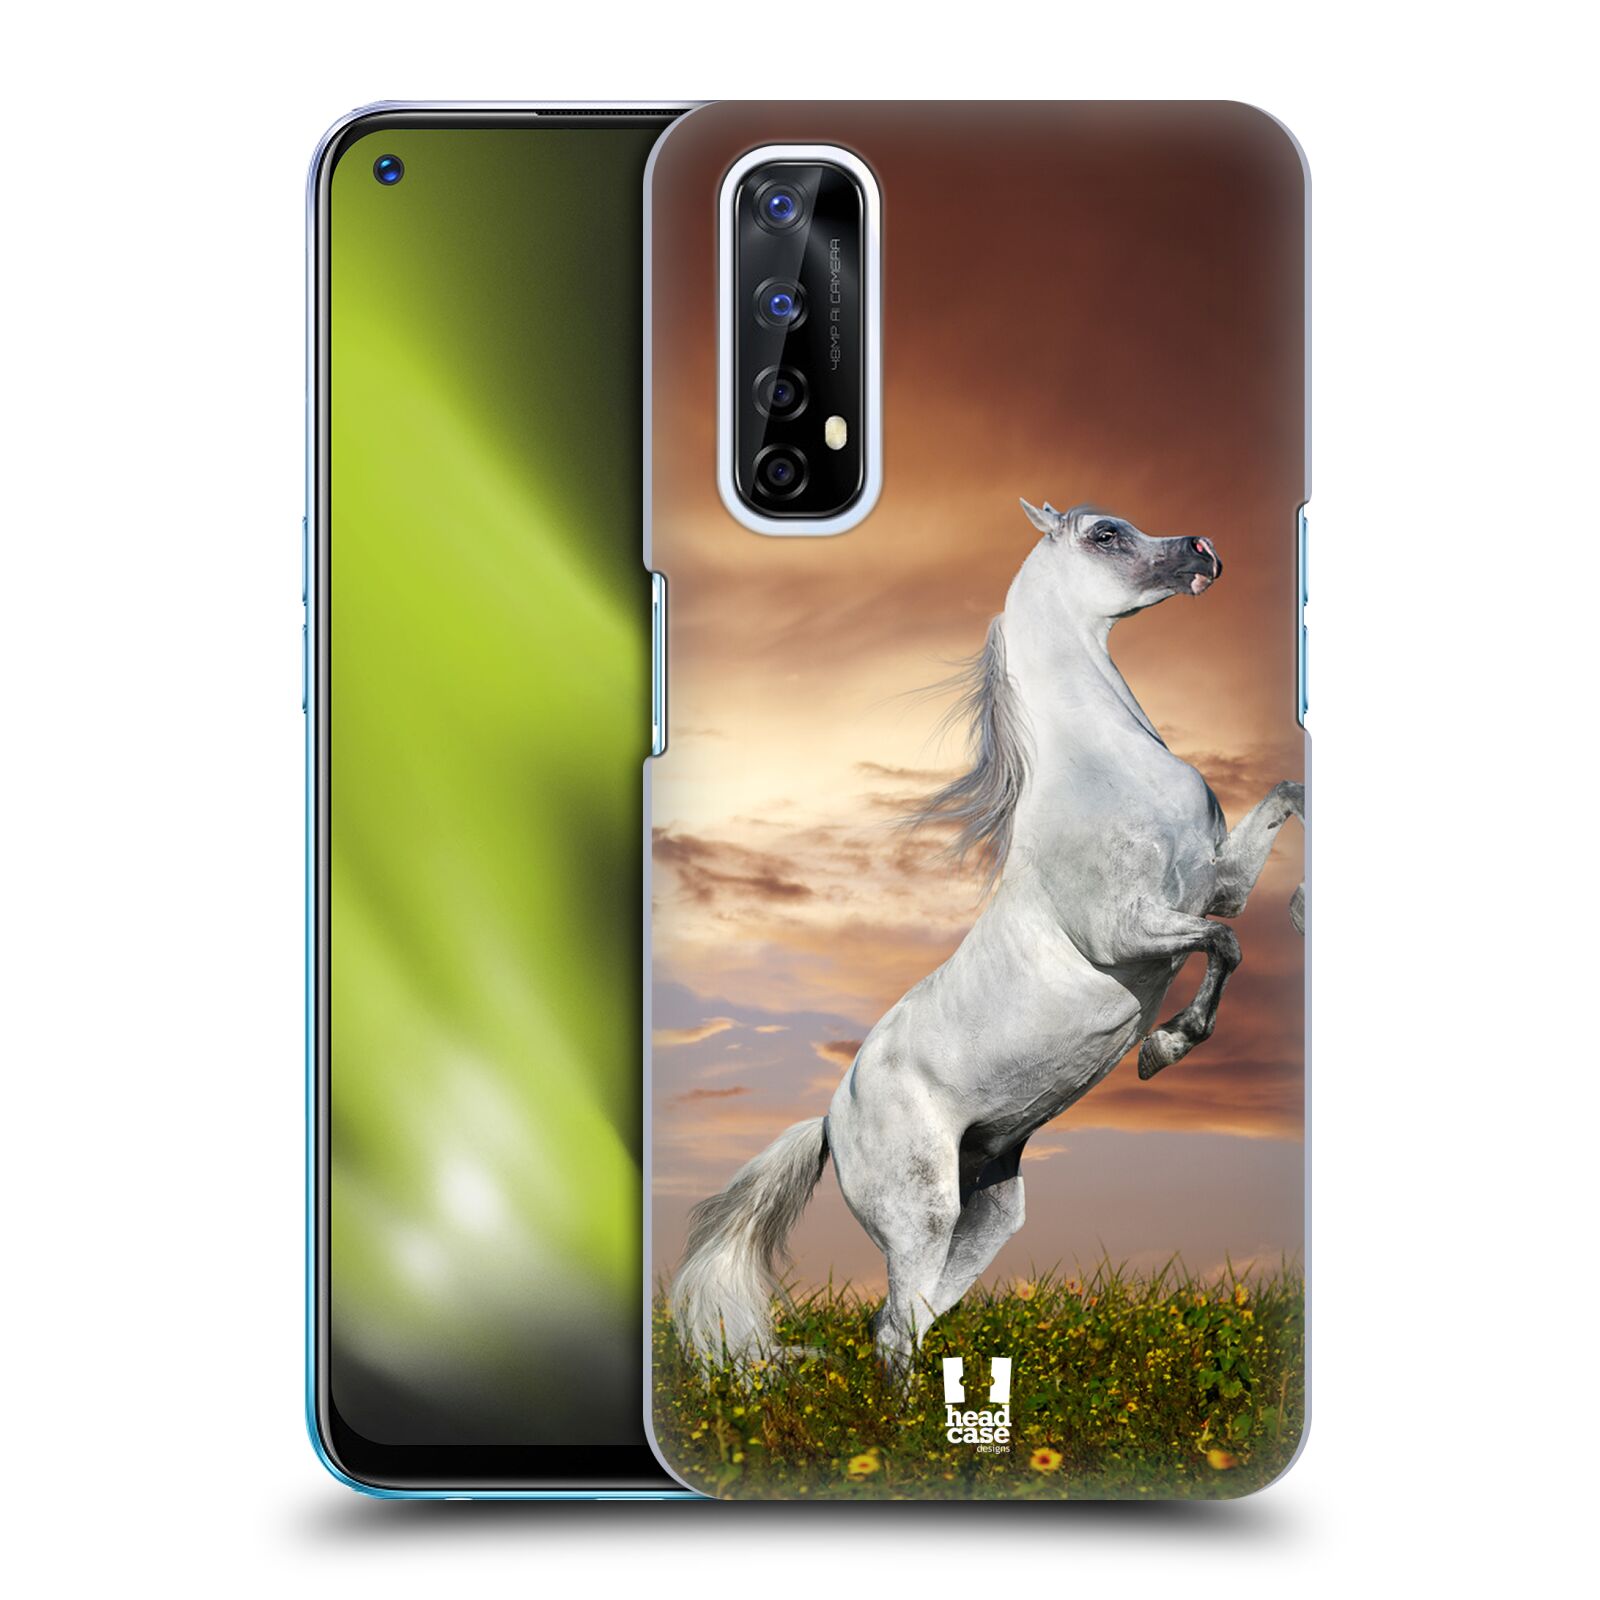 Zadní obal pro mobil Realme 7 - HEAD CASE - Svět zvířat divoký kůň